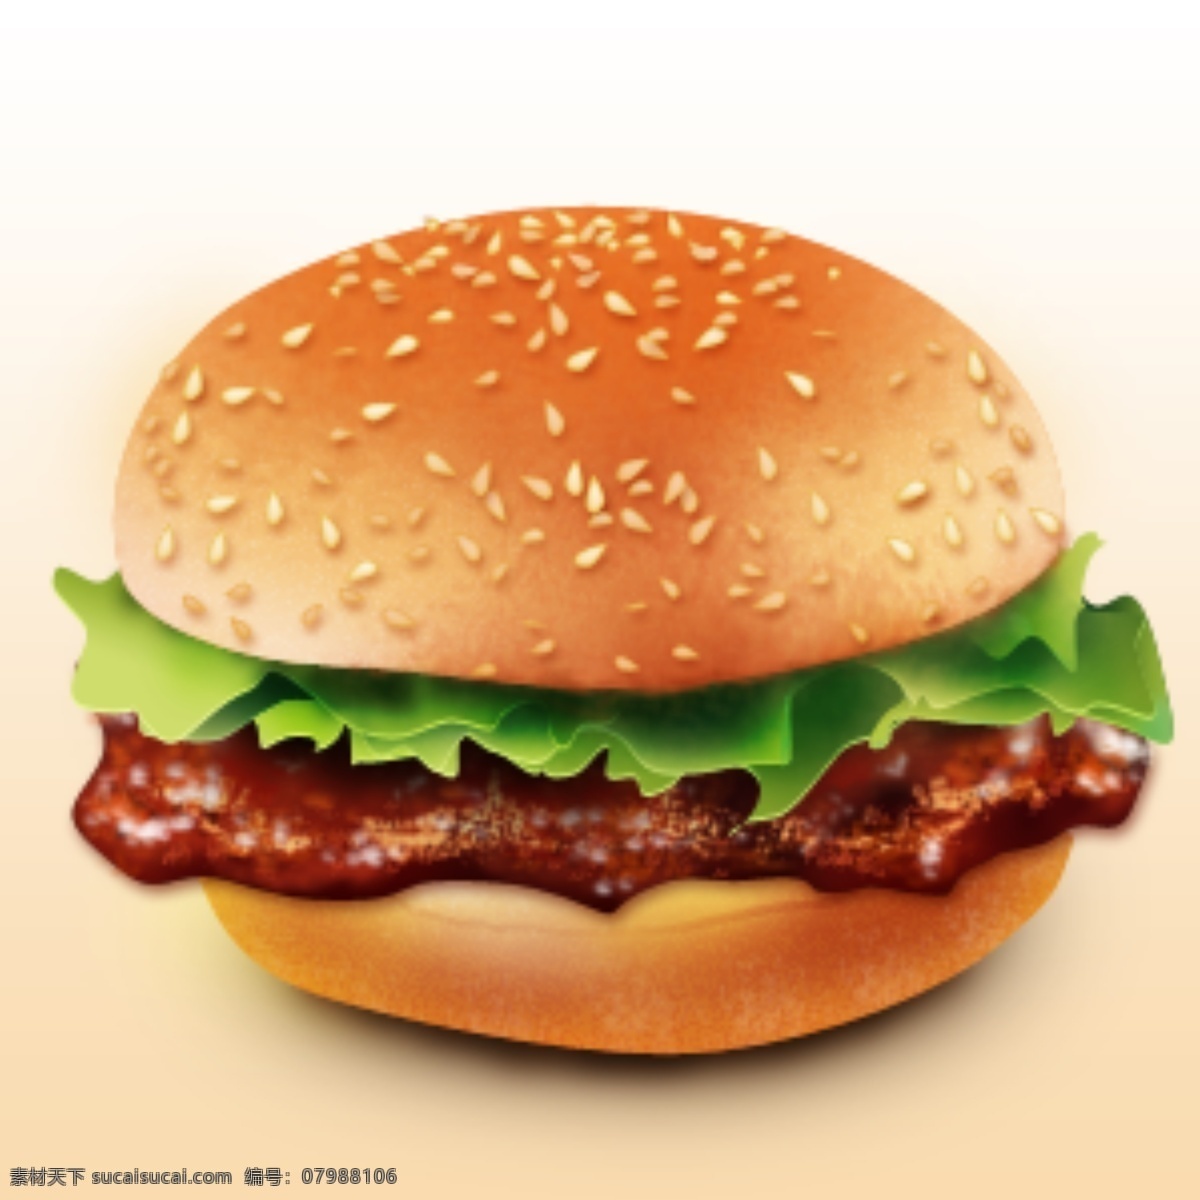 汉堡包 快餐 食品 分层 快餐食品 psd源文件 餐饮素材